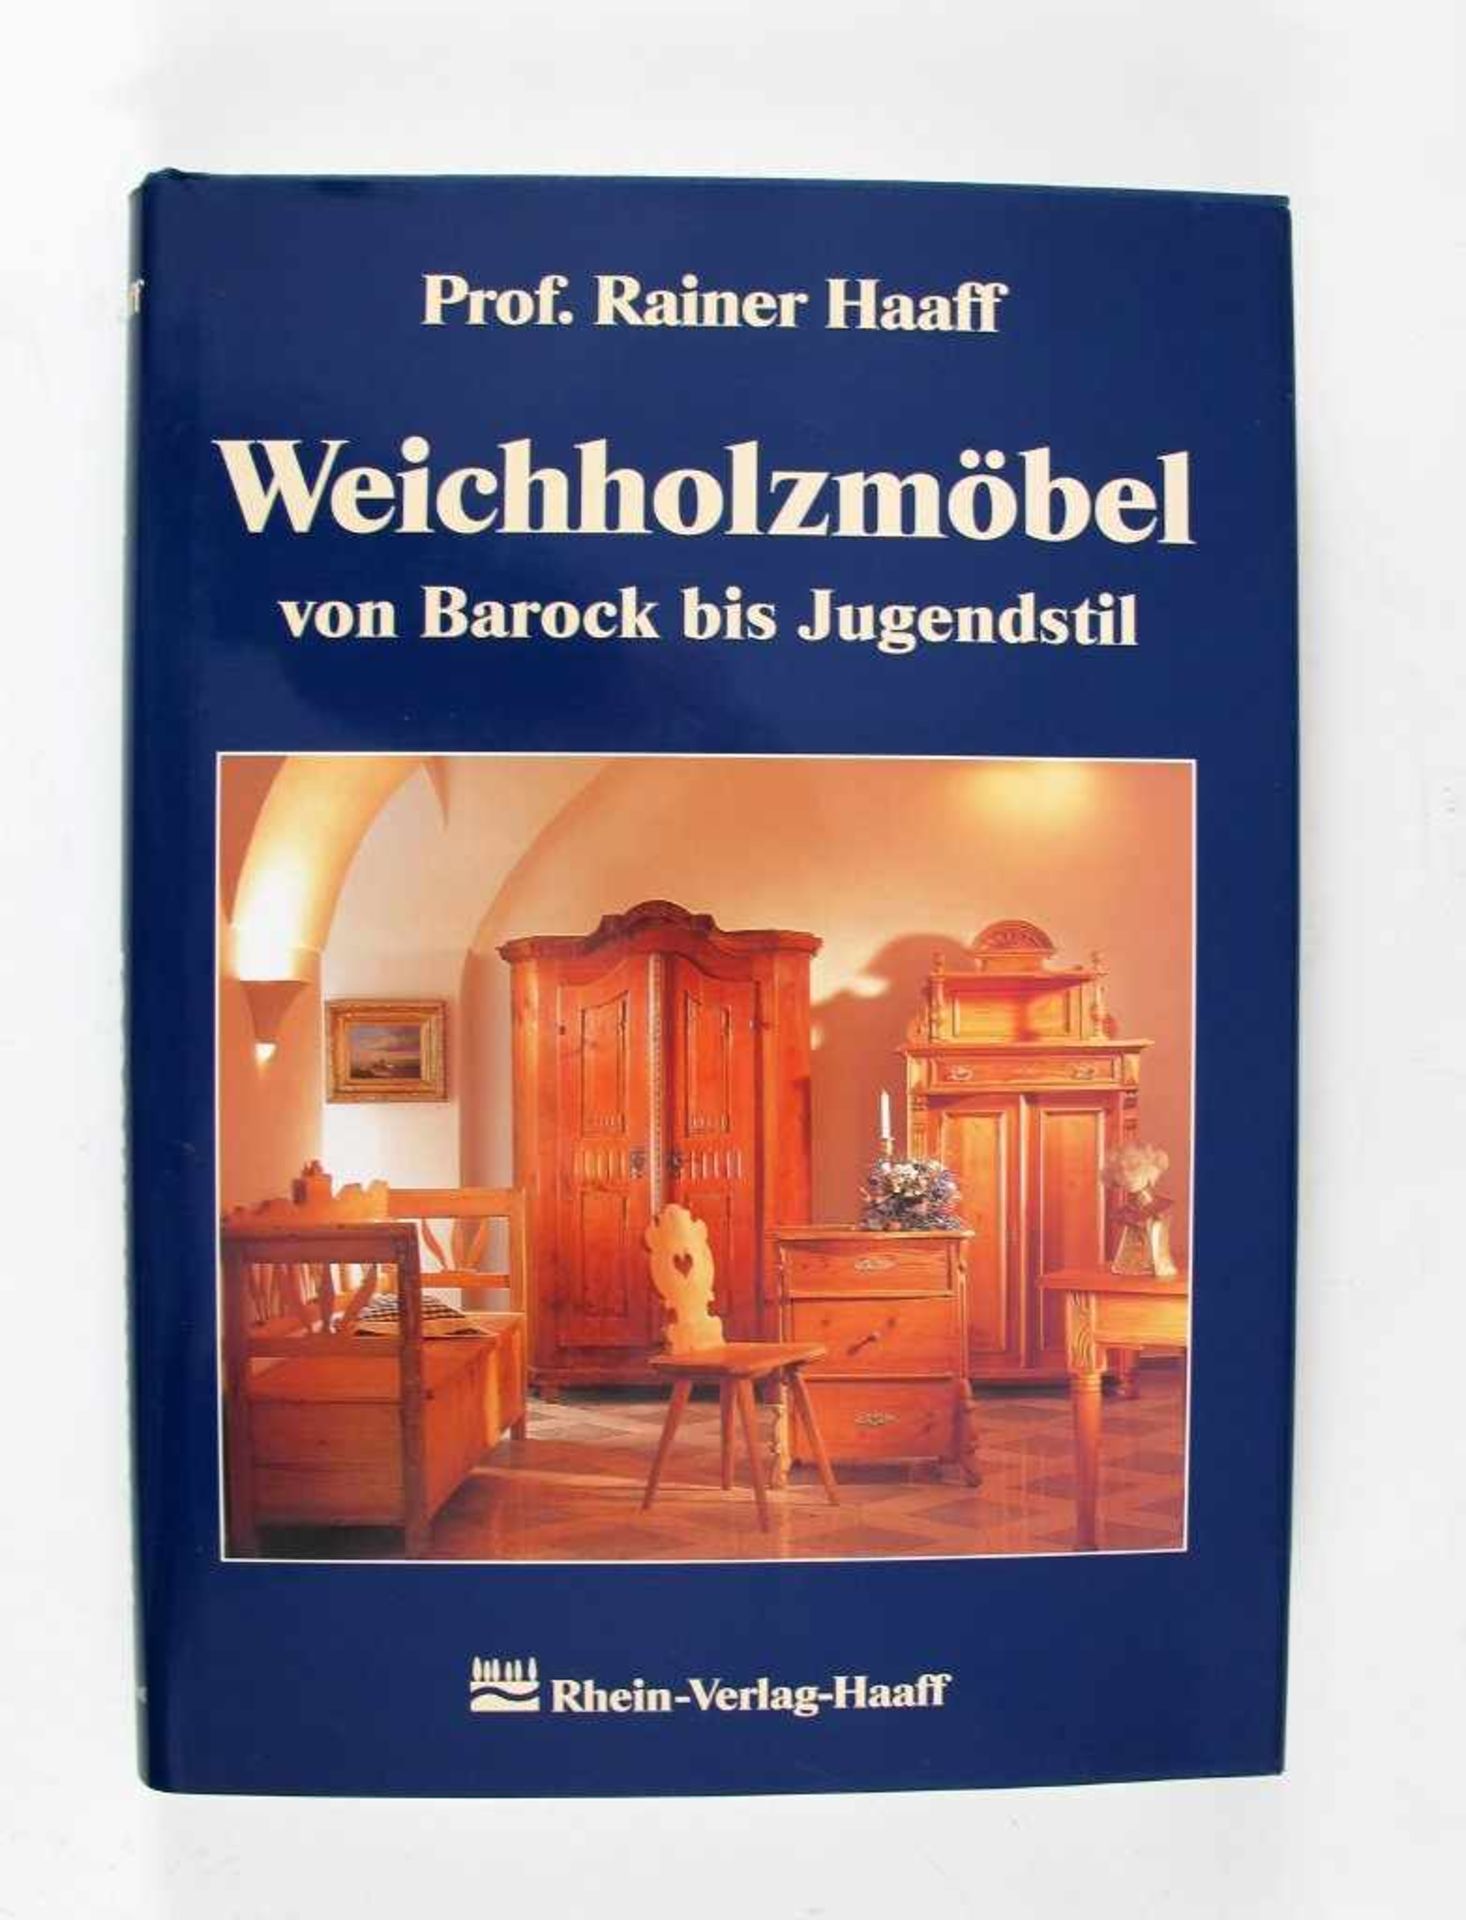 Kunst: Haaff, Rainer. Weichholzmöbel von Barock bis Jugendstil. Rhein-Verlag Haaff, Germersheim